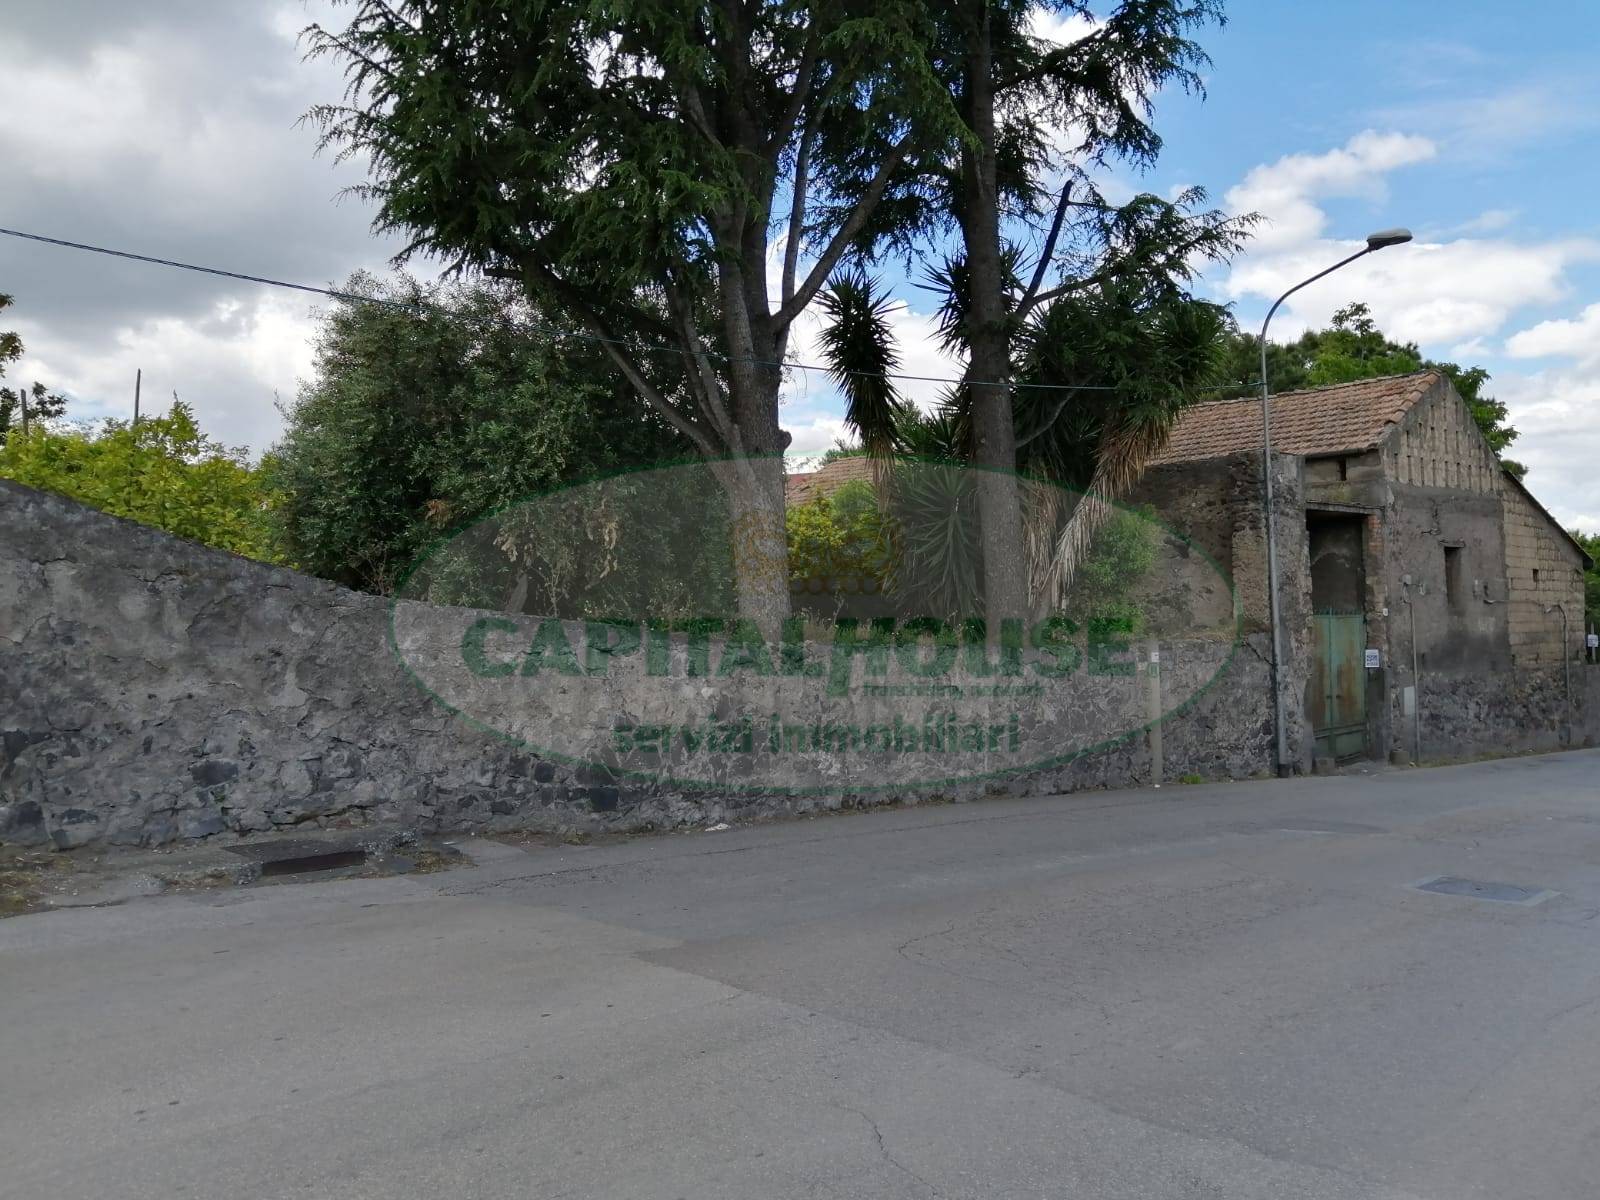 Rustico / Casale in affitto a Ottaviano, 4 locali, Trattative riservate | CambioCasa.it